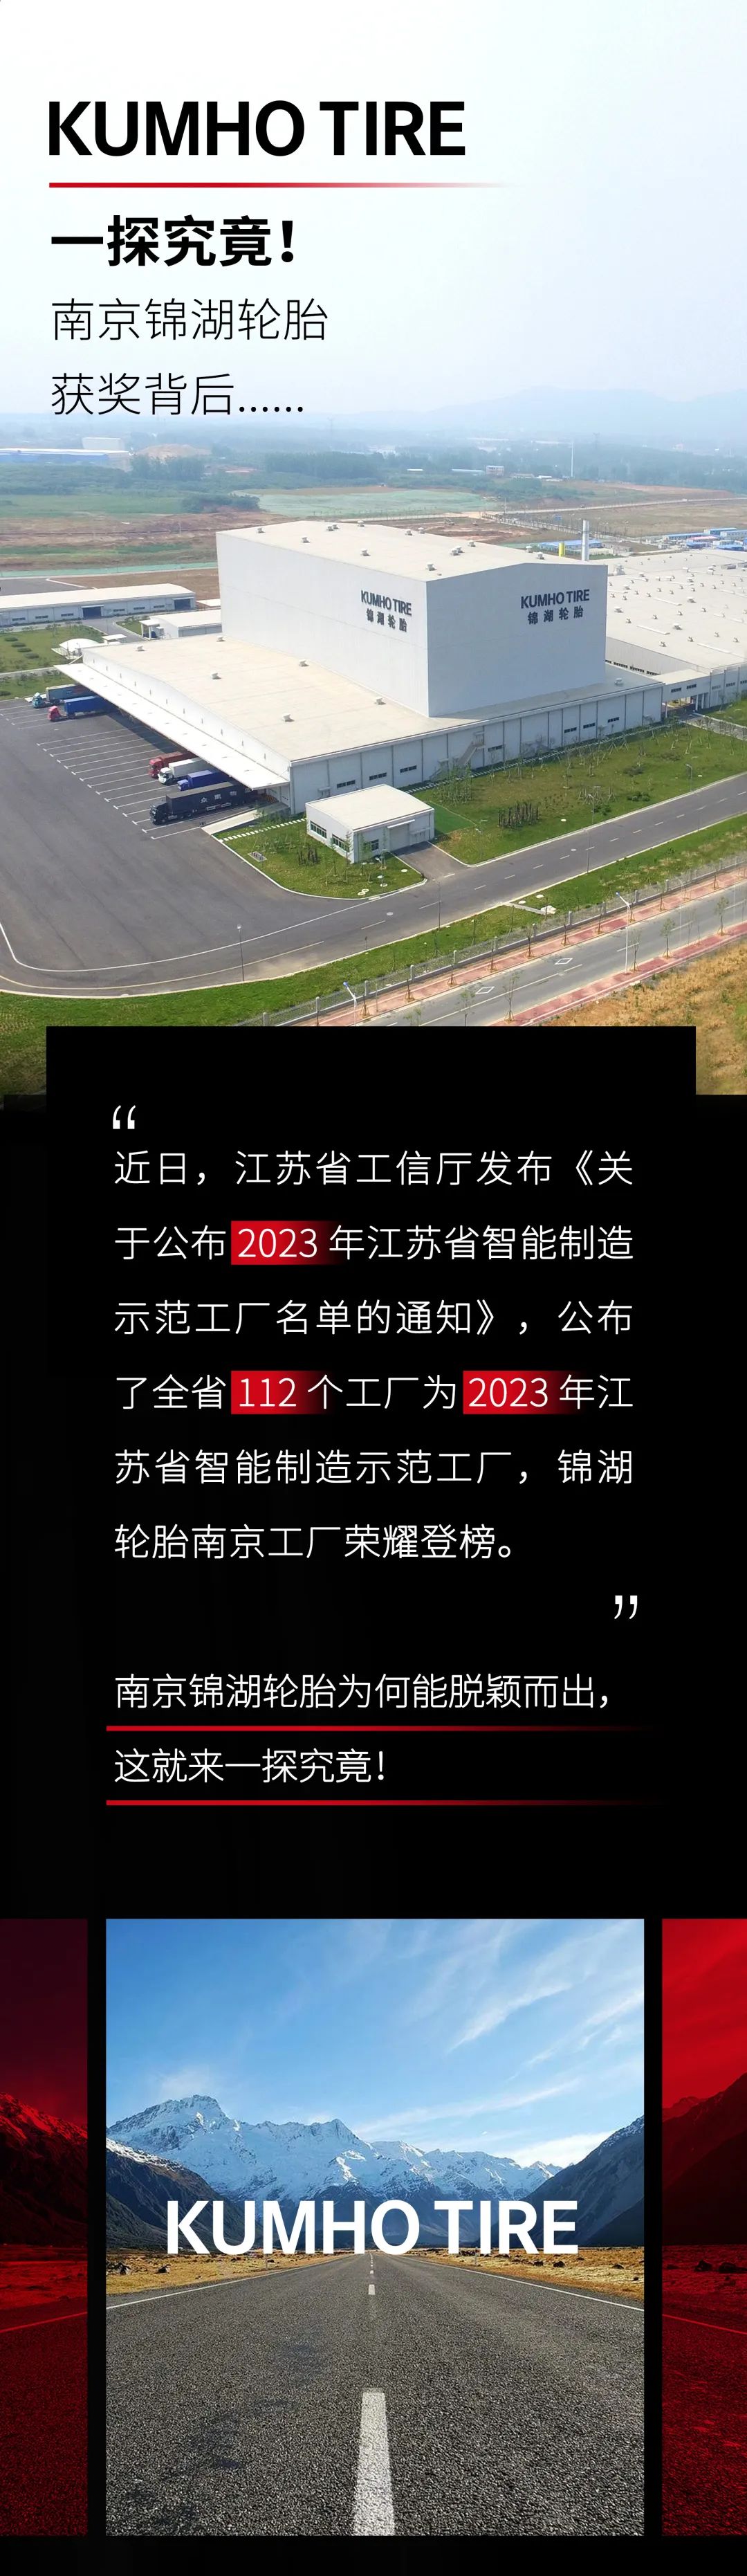 南京锦湖轮胎荣获“2023年江苏省智能制造示范工厂”